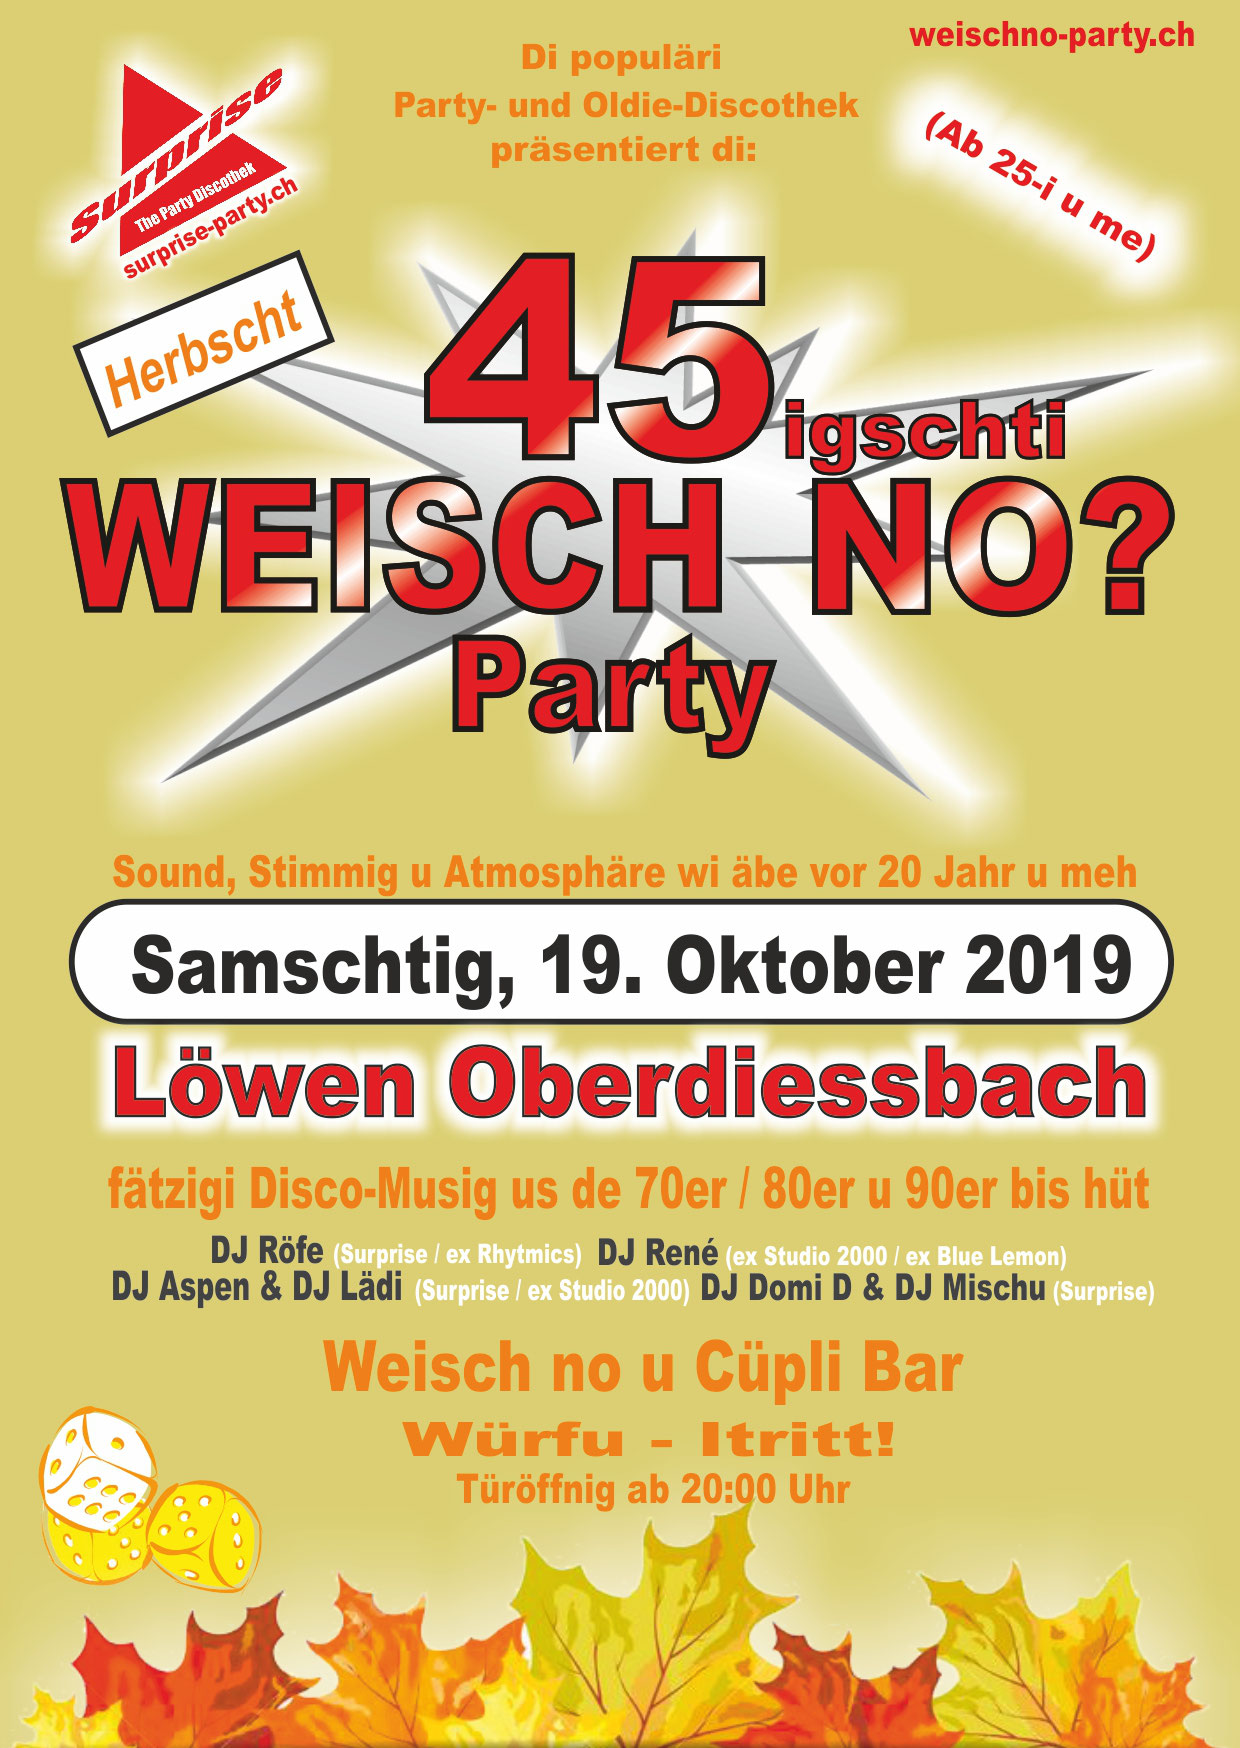 (c) Weischno-party.ch